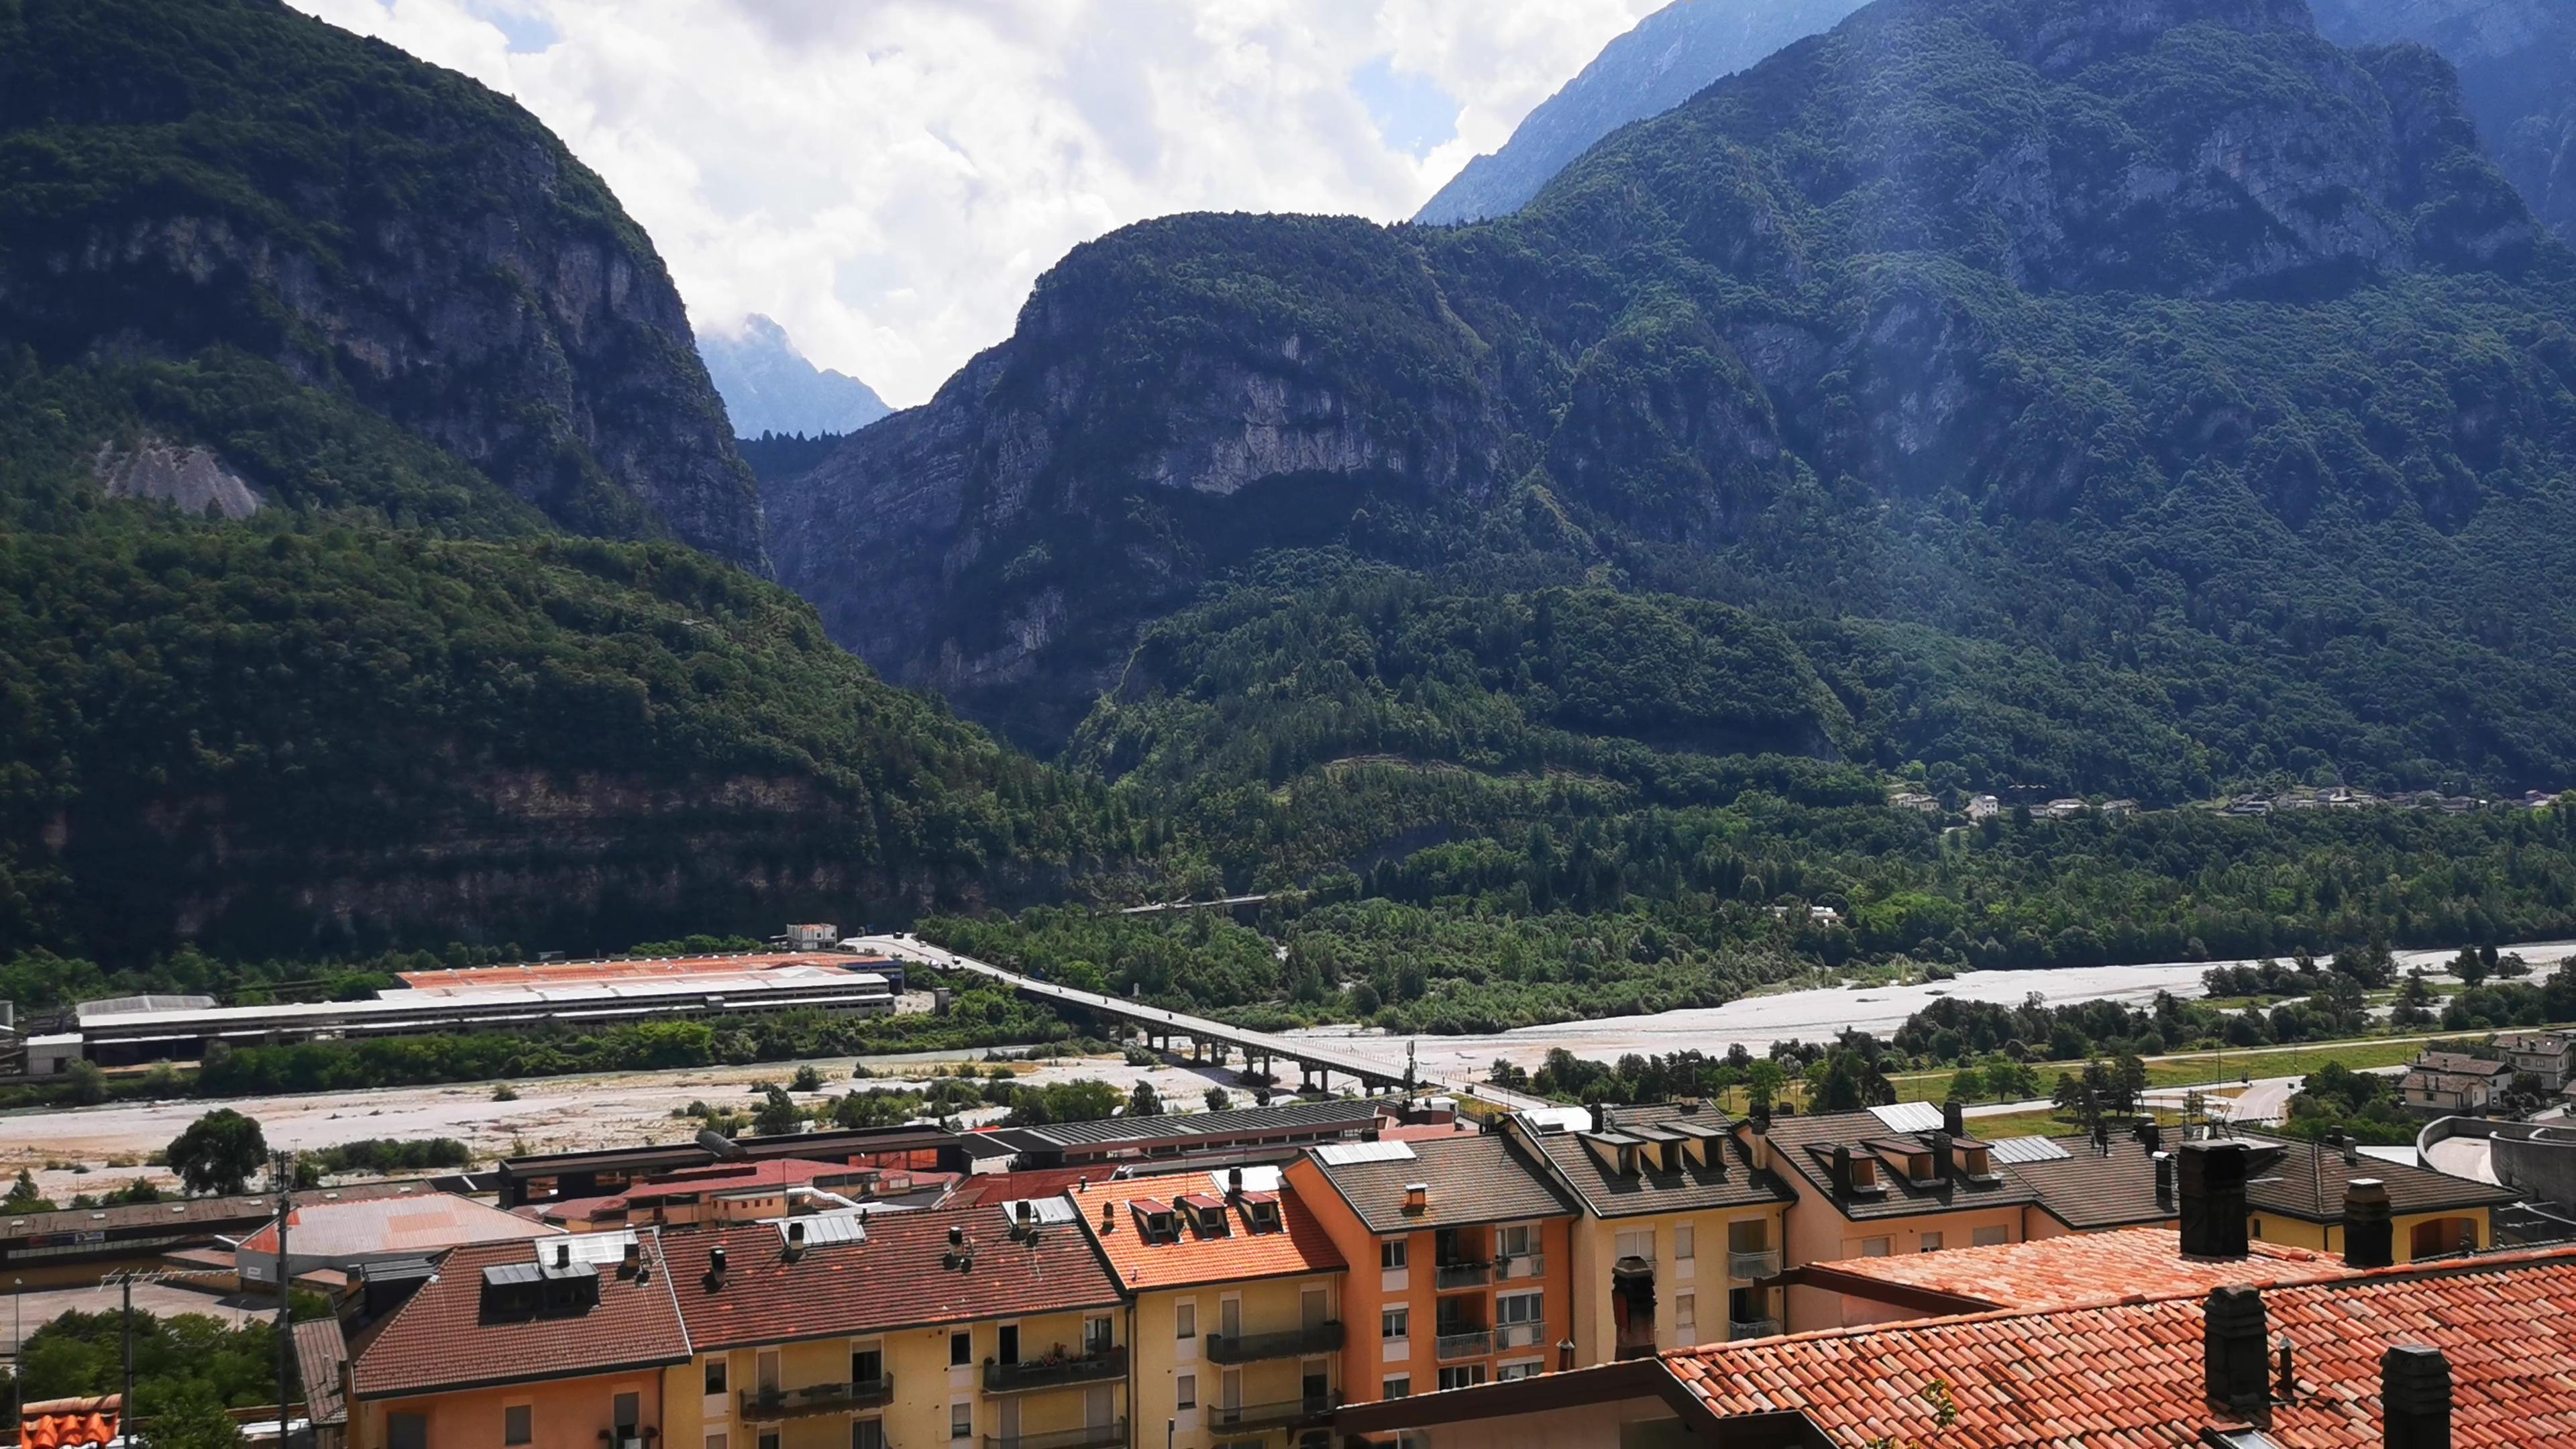 Longarone vista dall'alto - Longarone Fiere Dolomiti e imboccatira della valle del Vajont